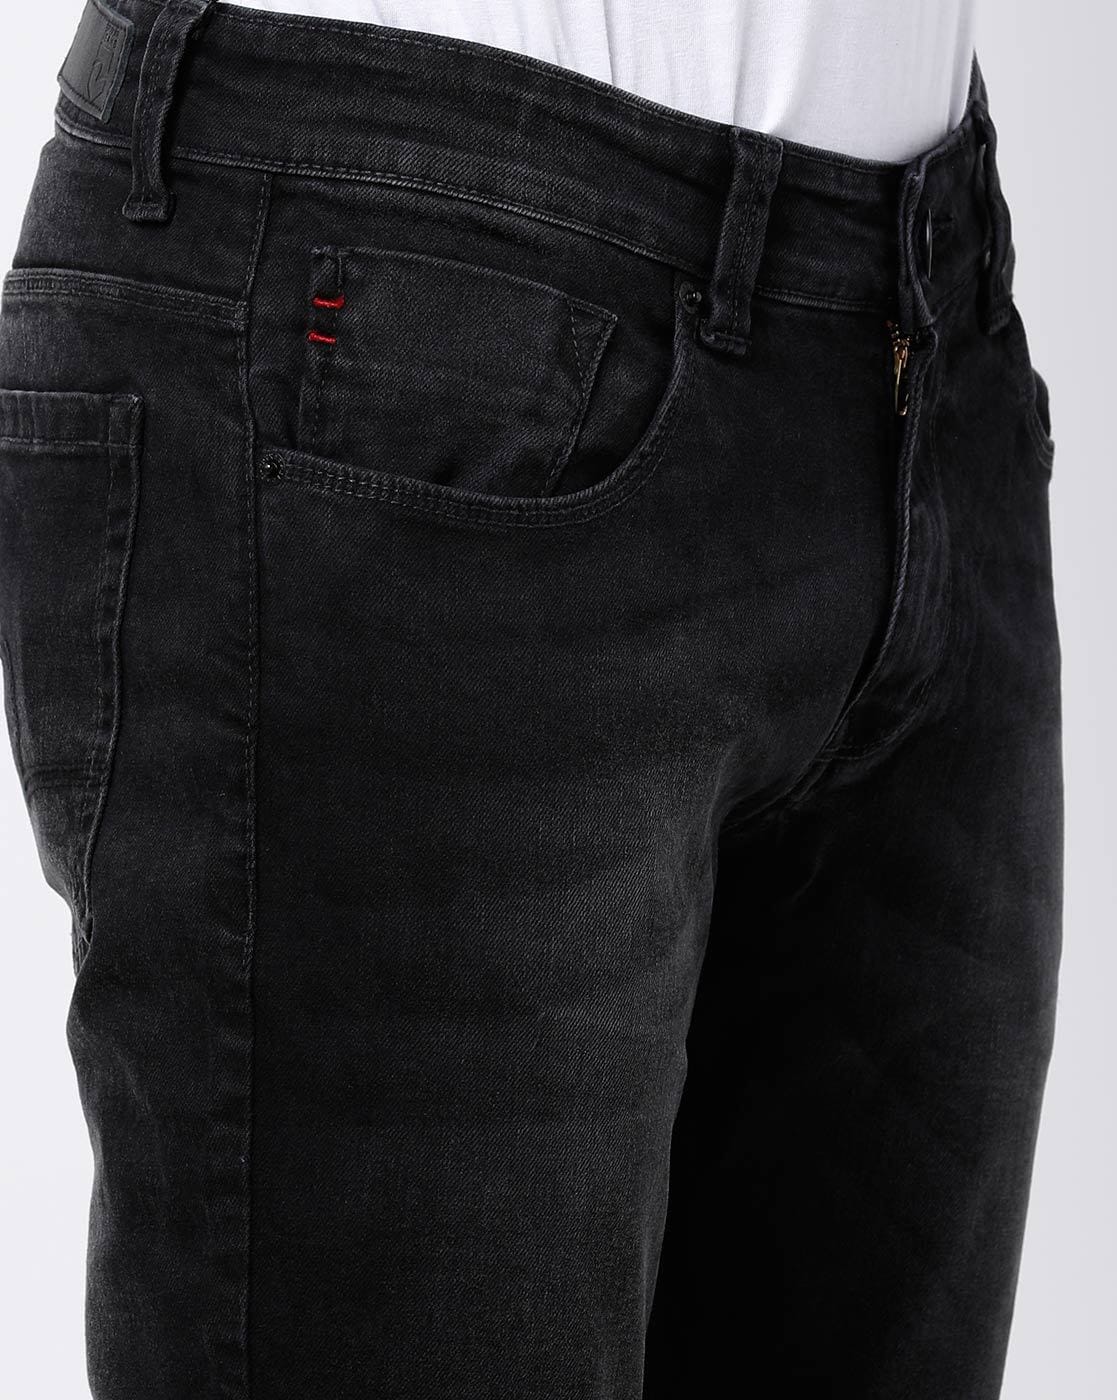 Buy Carbon Black Jeans for Men by SPYKAR Online  Ajiocom